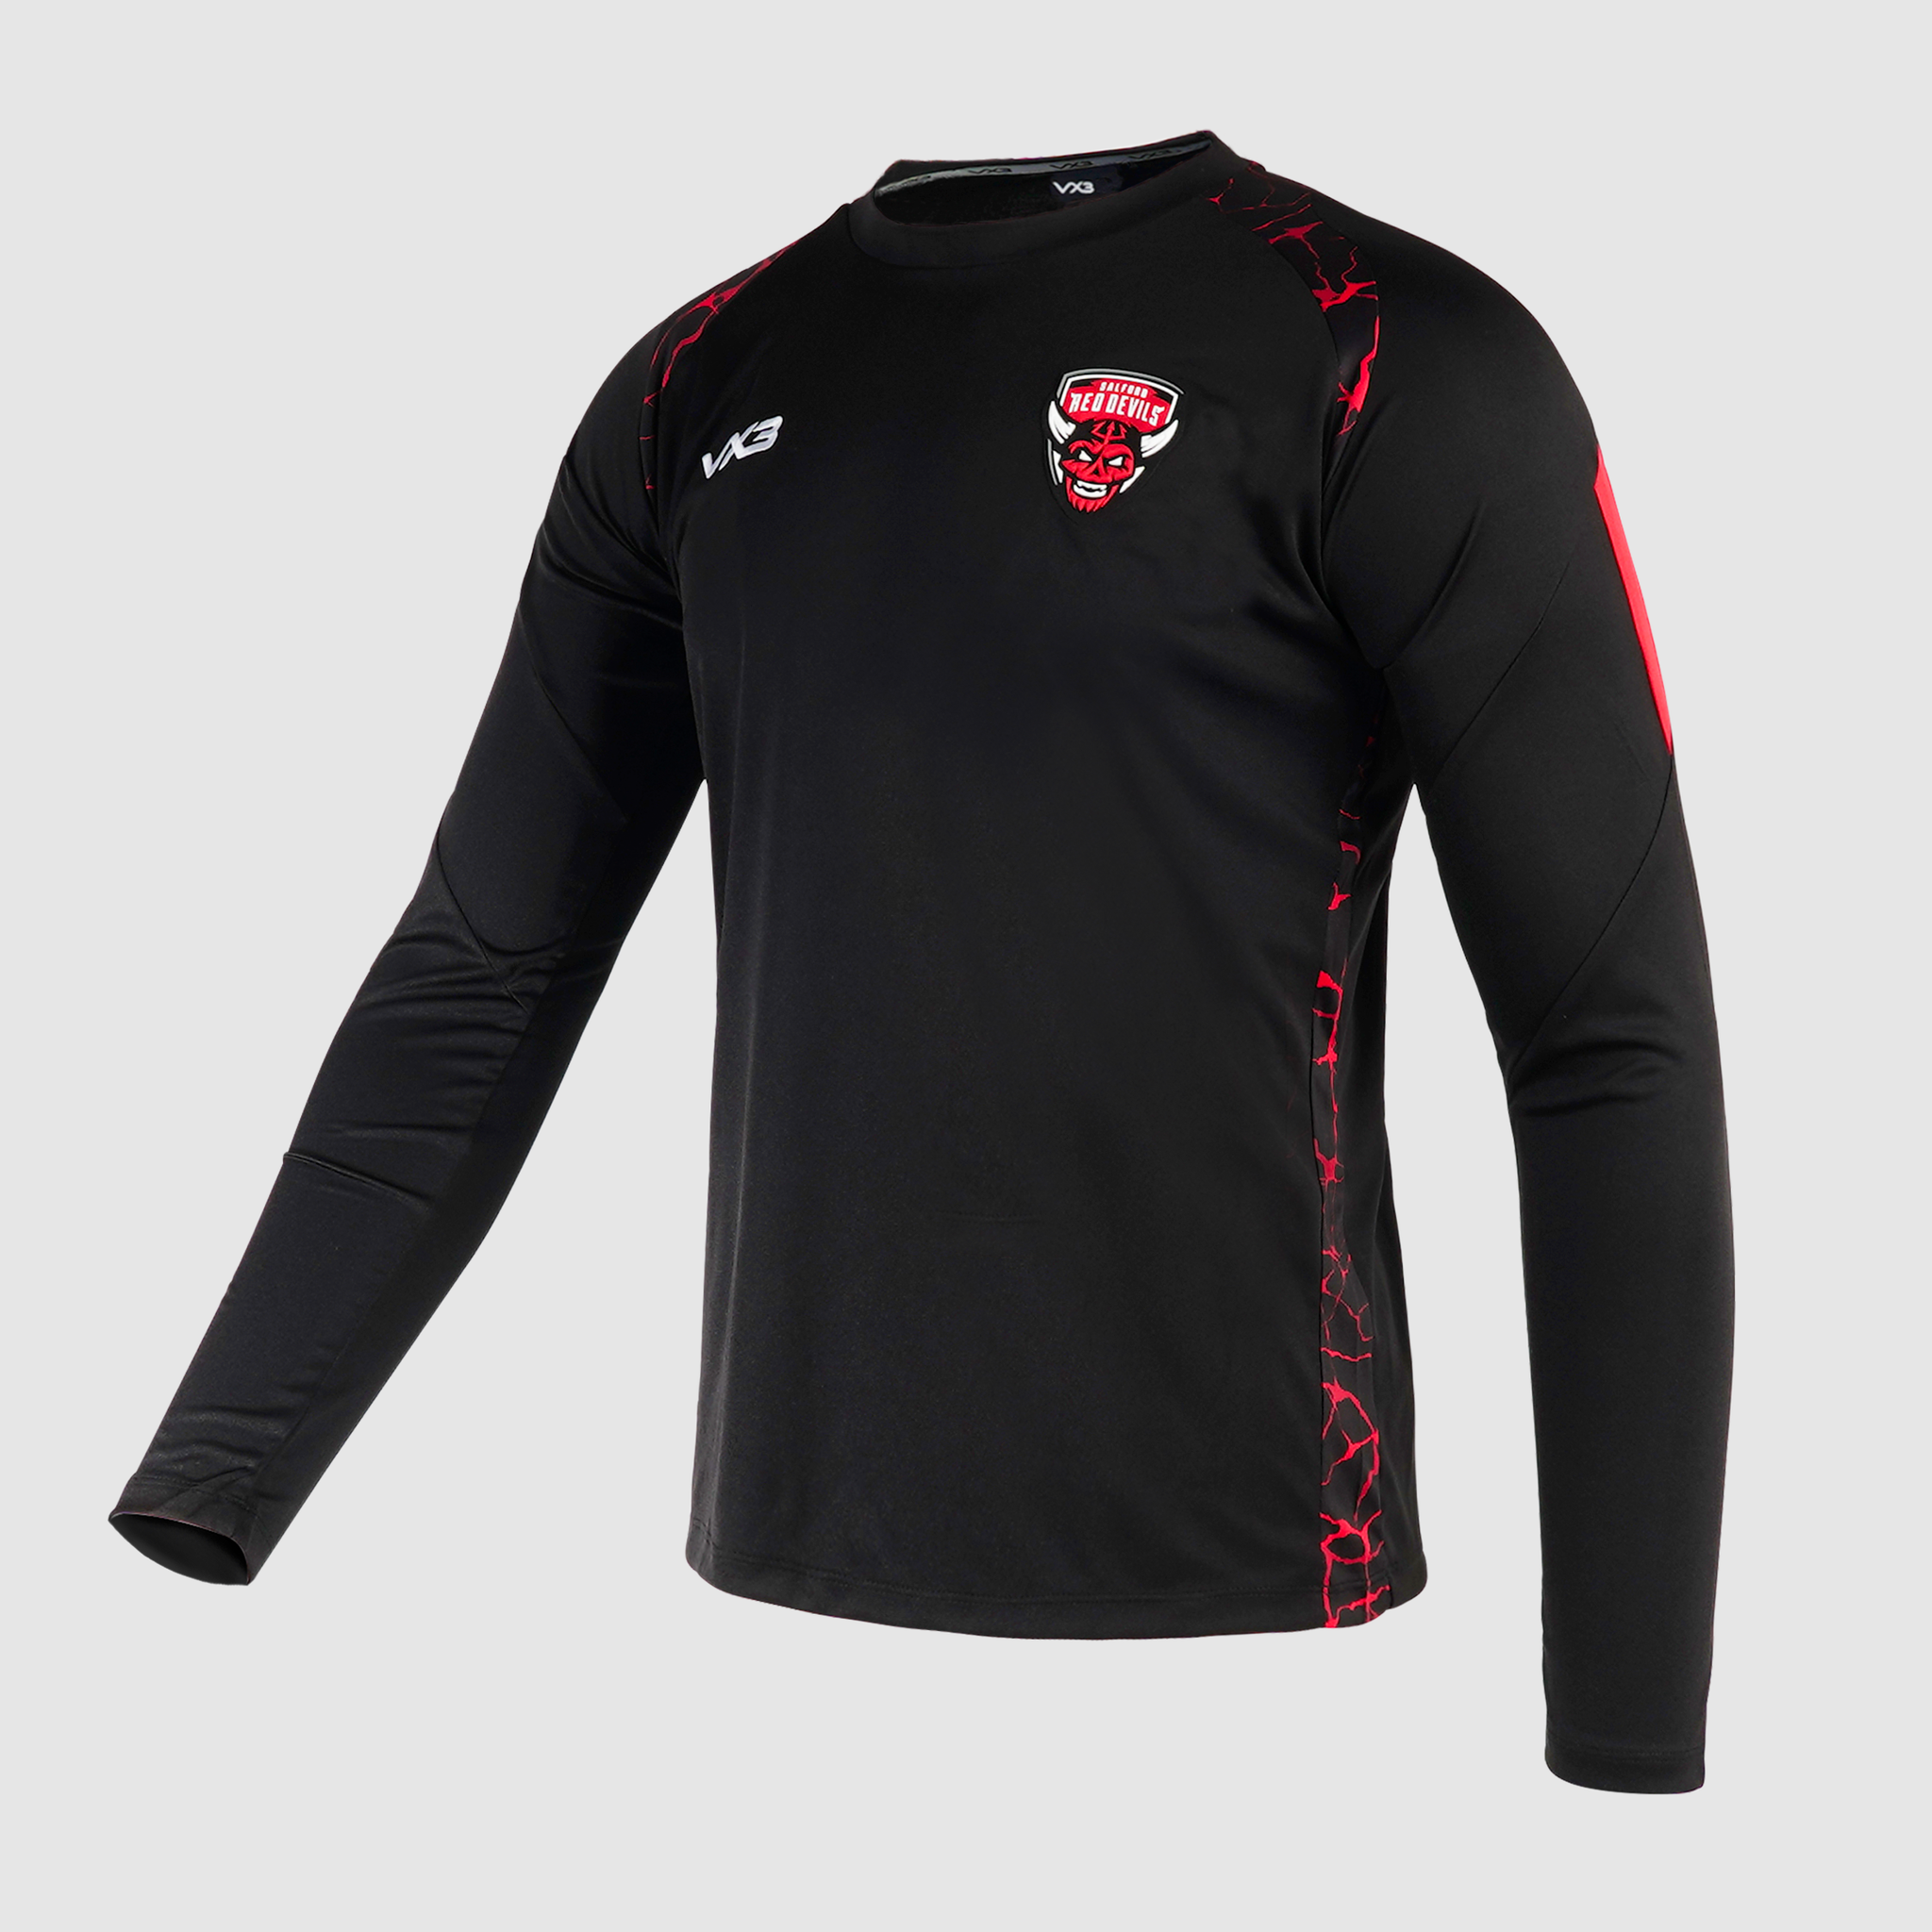 Salford Red Devils 2024 Quadrigo Black Training Tee Long Sleeve